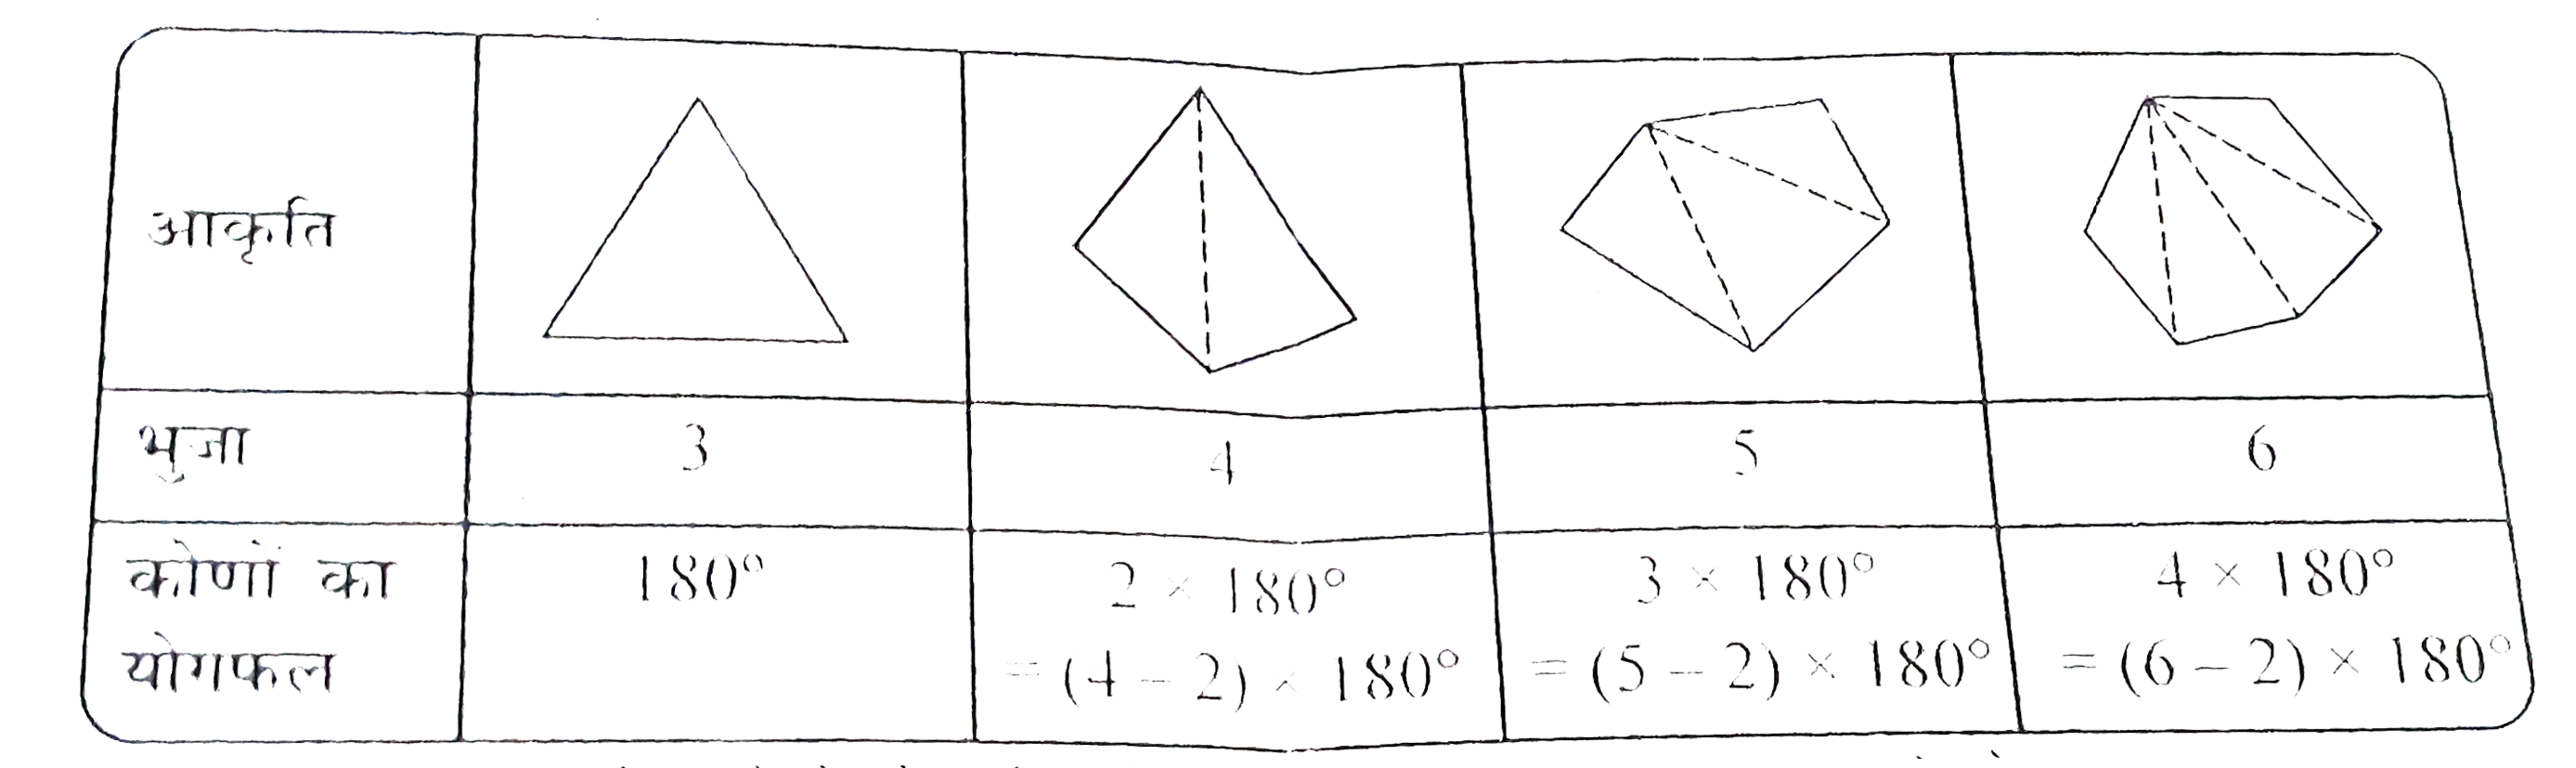 तालिका   की जाँच कीजिए :  ( प्रत्येक  आकृति  को त्रिभुजों  में बाँटिए और  कोणों का  योगफल  ज्ञात कीजिए )        एक बहुभुज  के कोणों के योग  के बारे  में आप  क्या  कह  सकते  है  जिसकी  भुजाओं  की संख्या निम्नलिखित हो ?   (a) 7    (b)  8     (c)  10    (d)  n